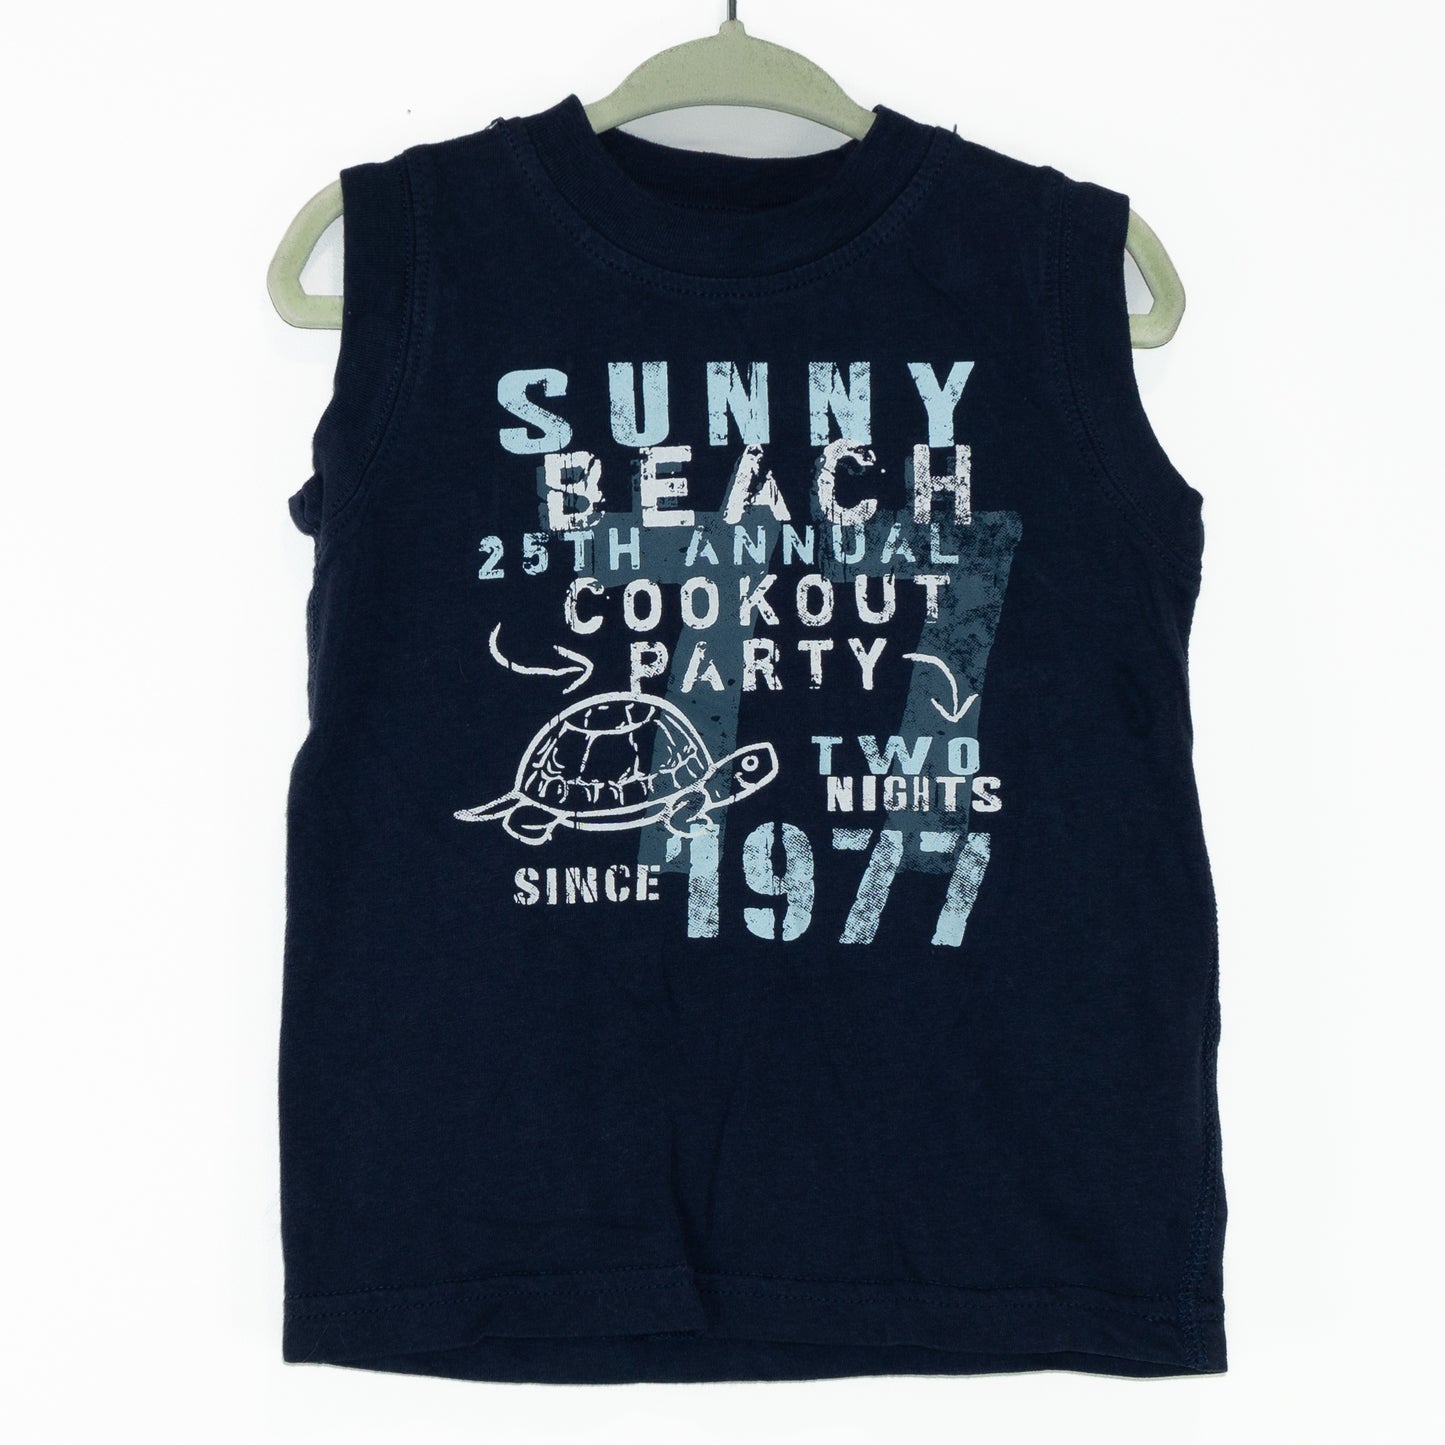 Sunny Beach Tank Top Size 1 year